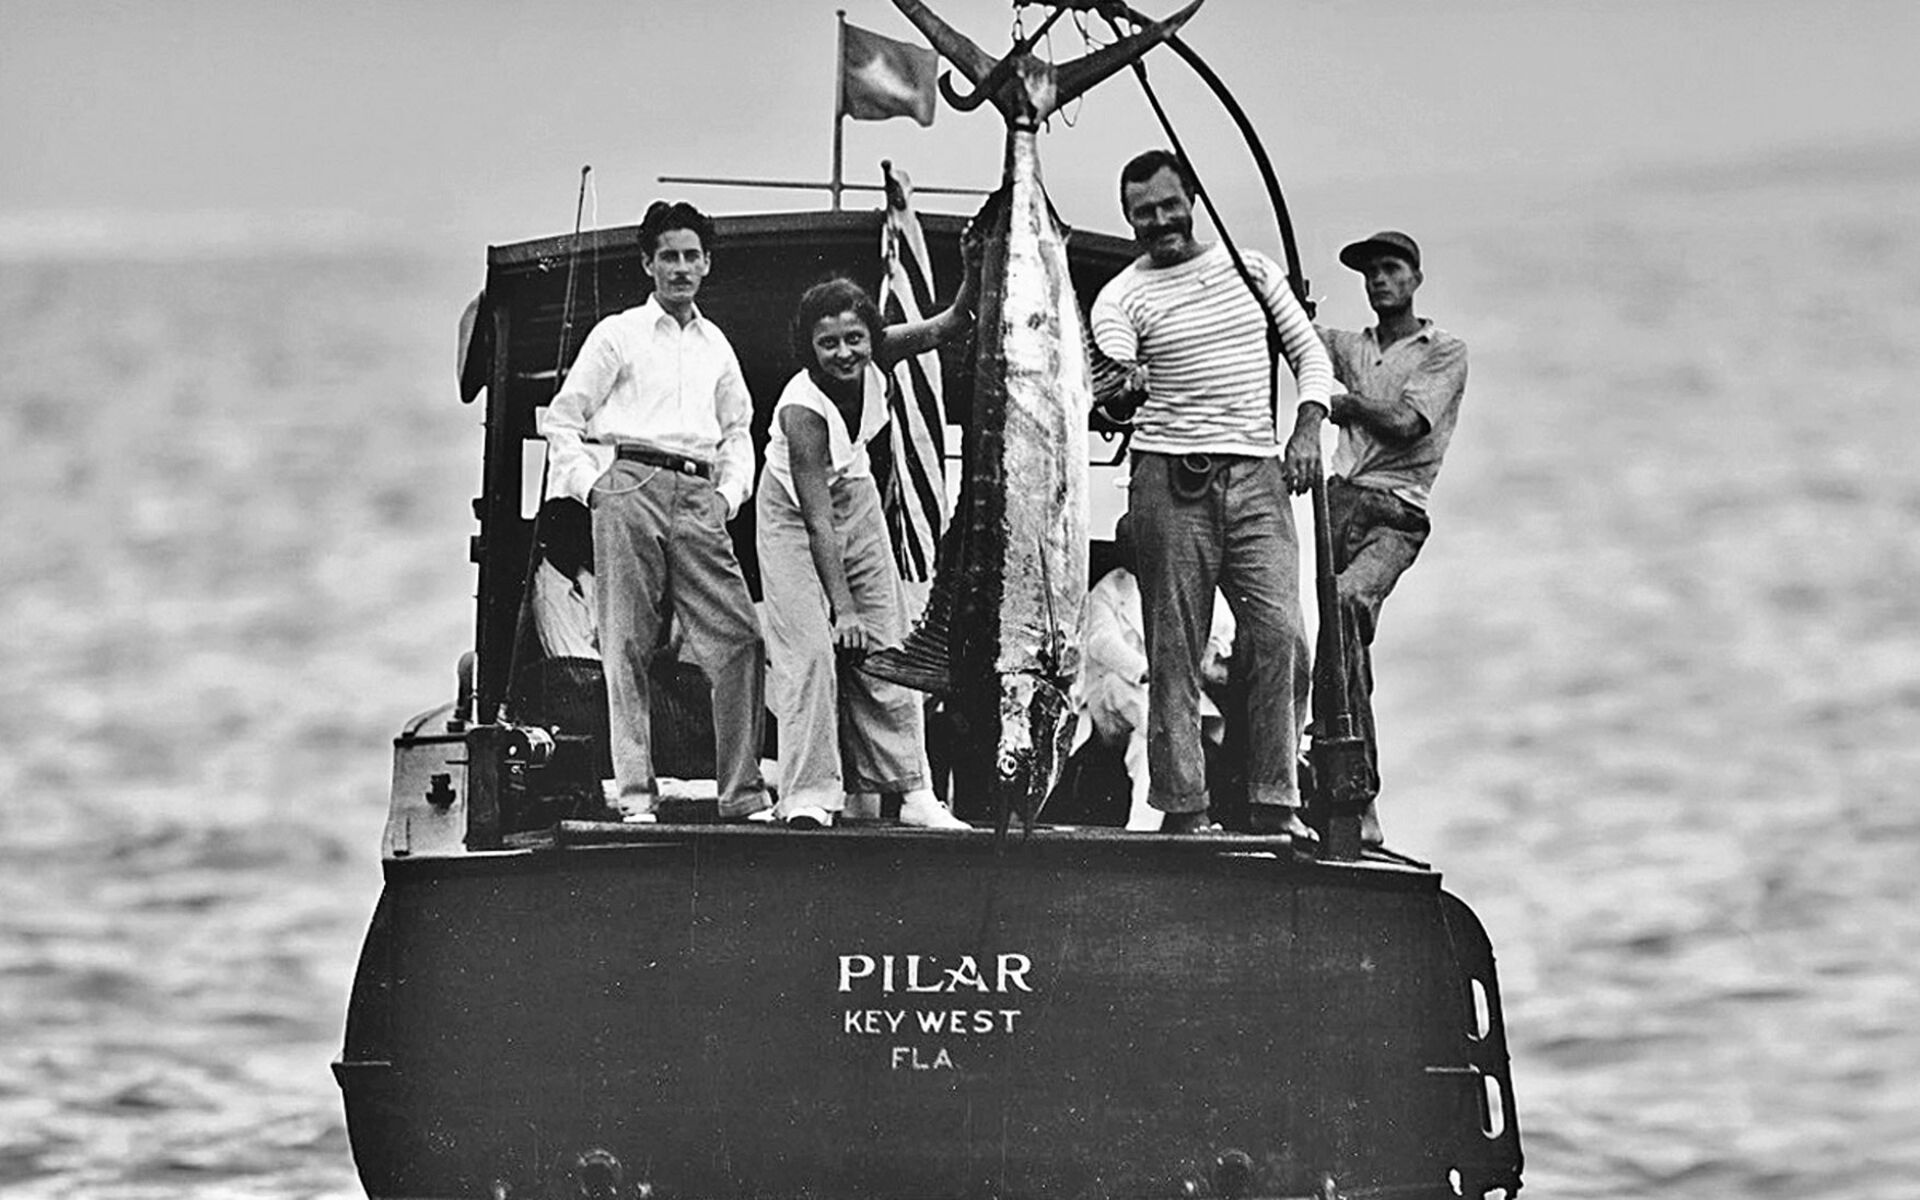  «Size matters!» Ernest Hemingway (2. v. r.) mit Trophäen-Fang auf seinem legendären Boot «Pilar». © IGFA  